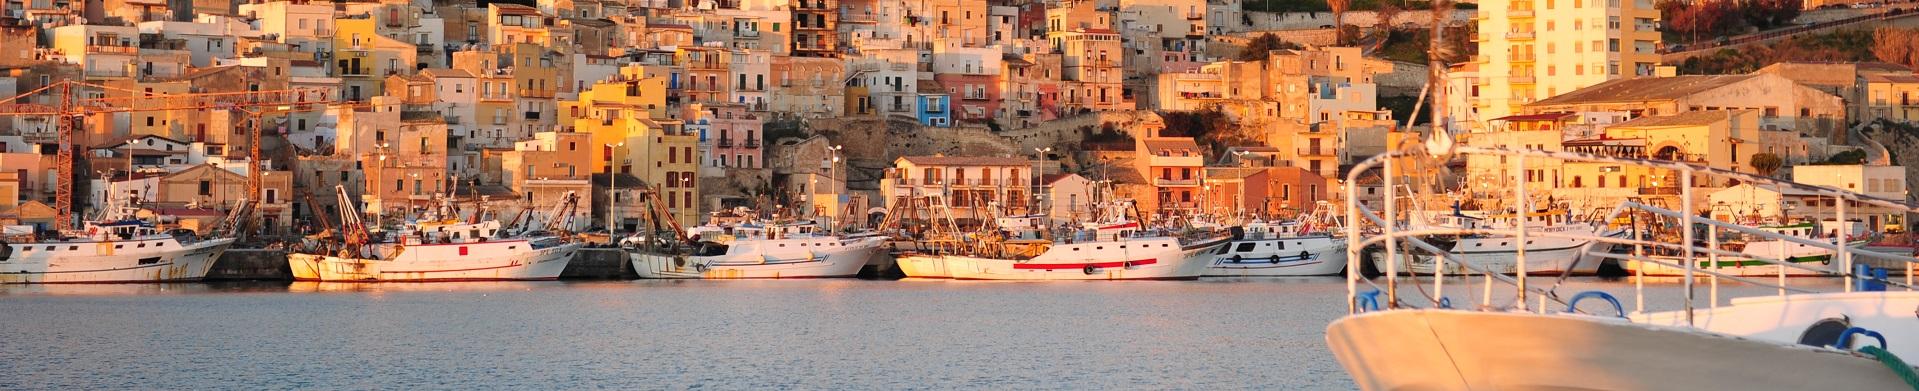 Ville e case vacanze in Sicilia vicino Sciacca